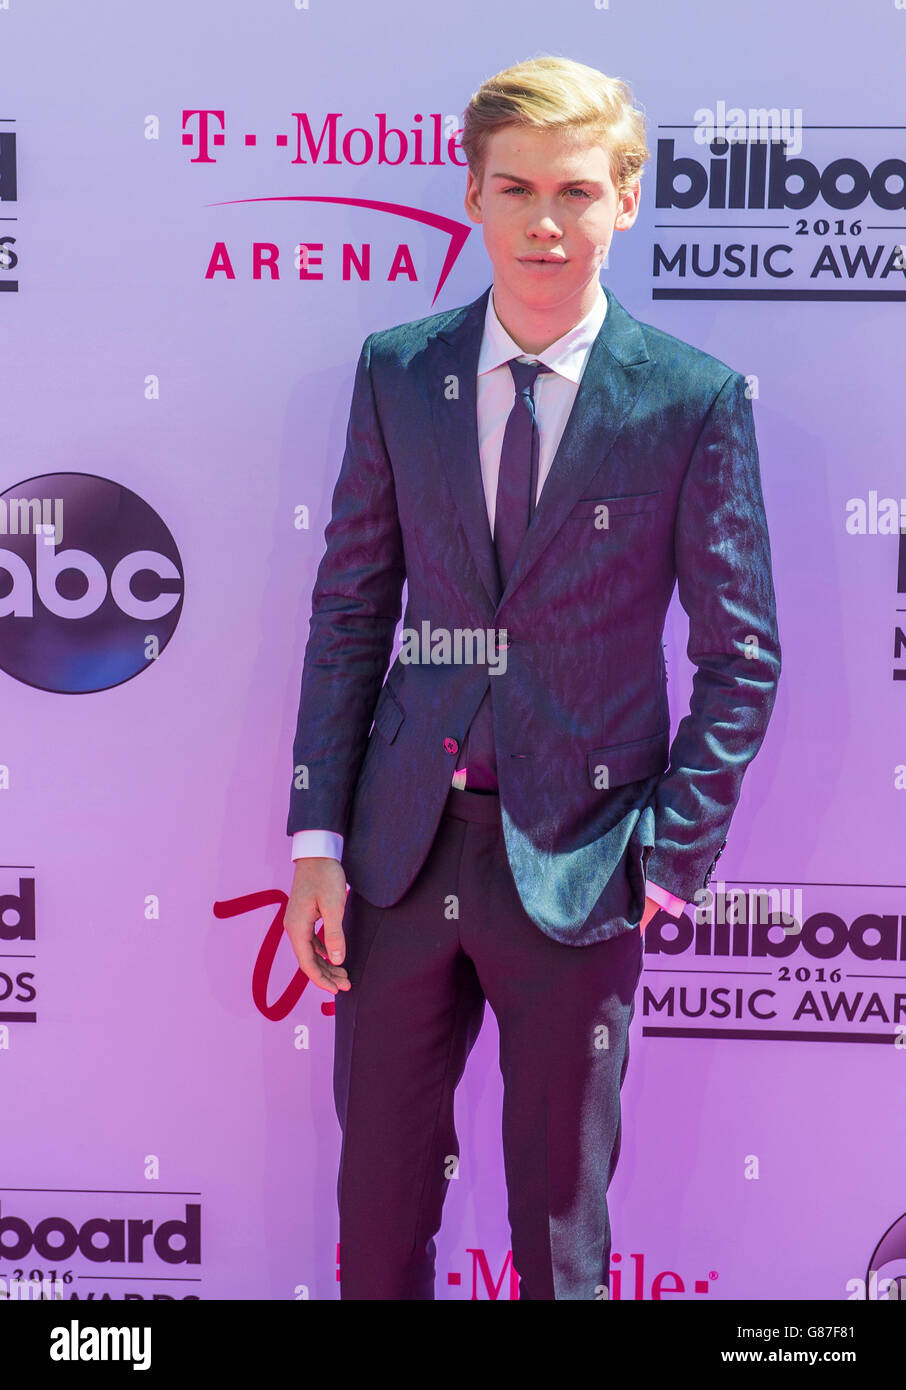 LAS VEGAS - 22.Mai: Schauspieler Aidan Alexander besucht die 2016 Billboard Music Awards in der T-Mobile Arena am 22. Mai 2016 in Las Vega Stockfoto